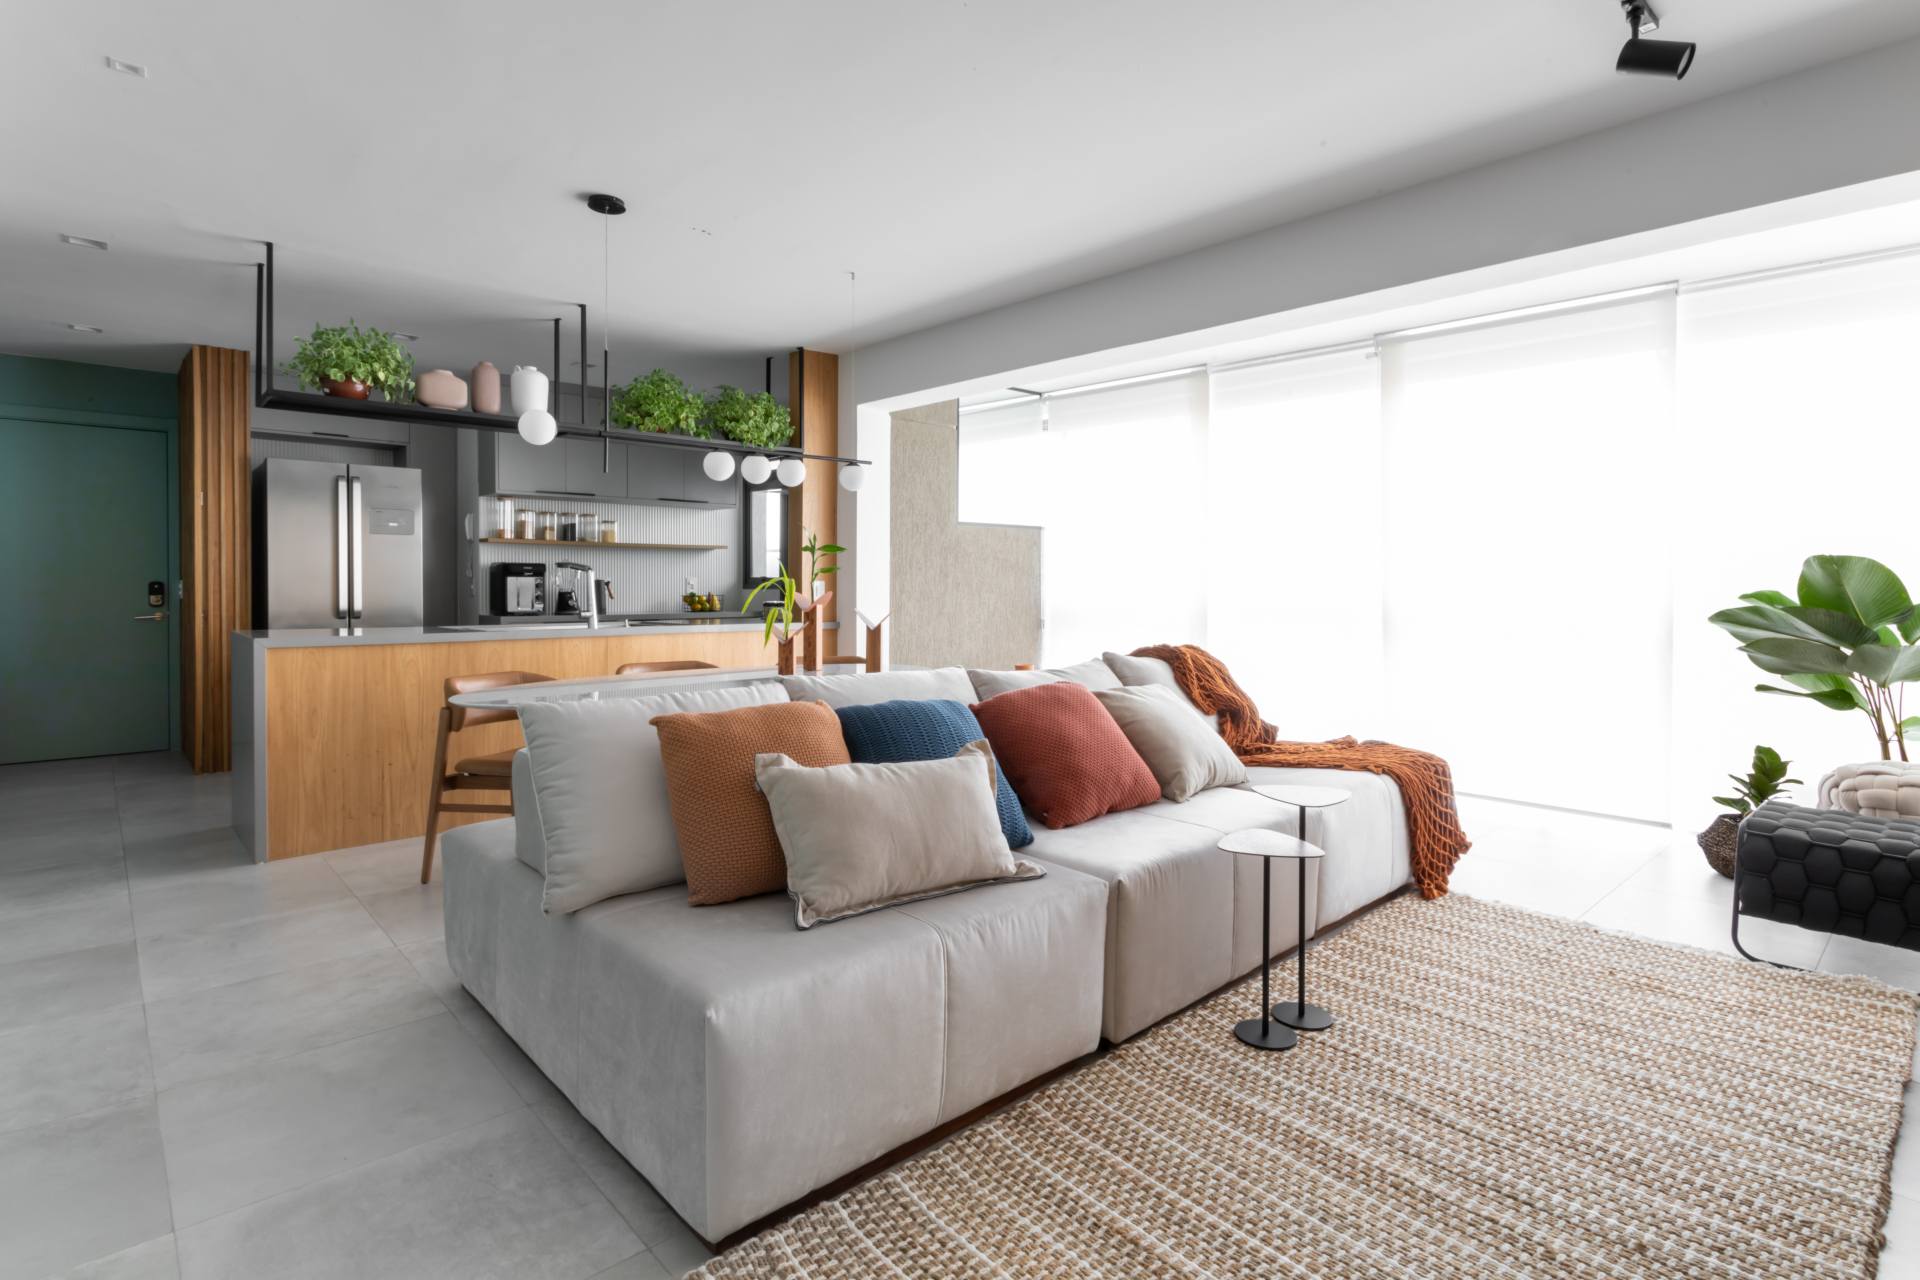 Sala de estar integrada à cozinha e à varanda, com base neutra e detalhes coloridos